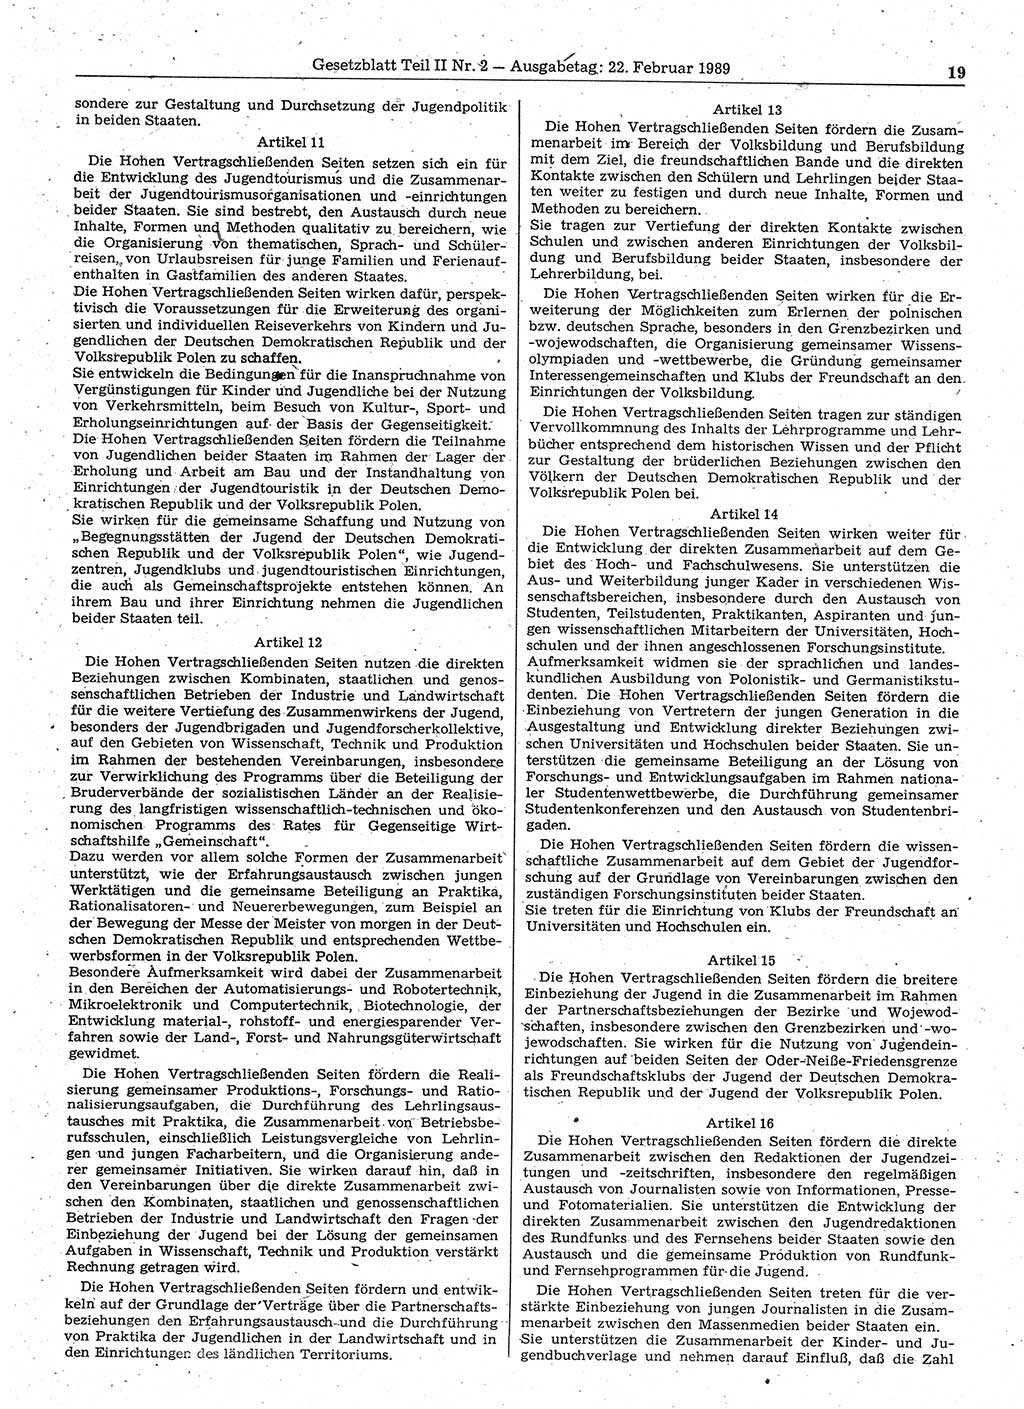 Gesetzblatt (GBl.) der Deutschen Demokratischen Republik (DDR) Teil ⅠⅠ 1989, Seite 19 (GBl. DDR ⅠⅠ 1989, S. 19)